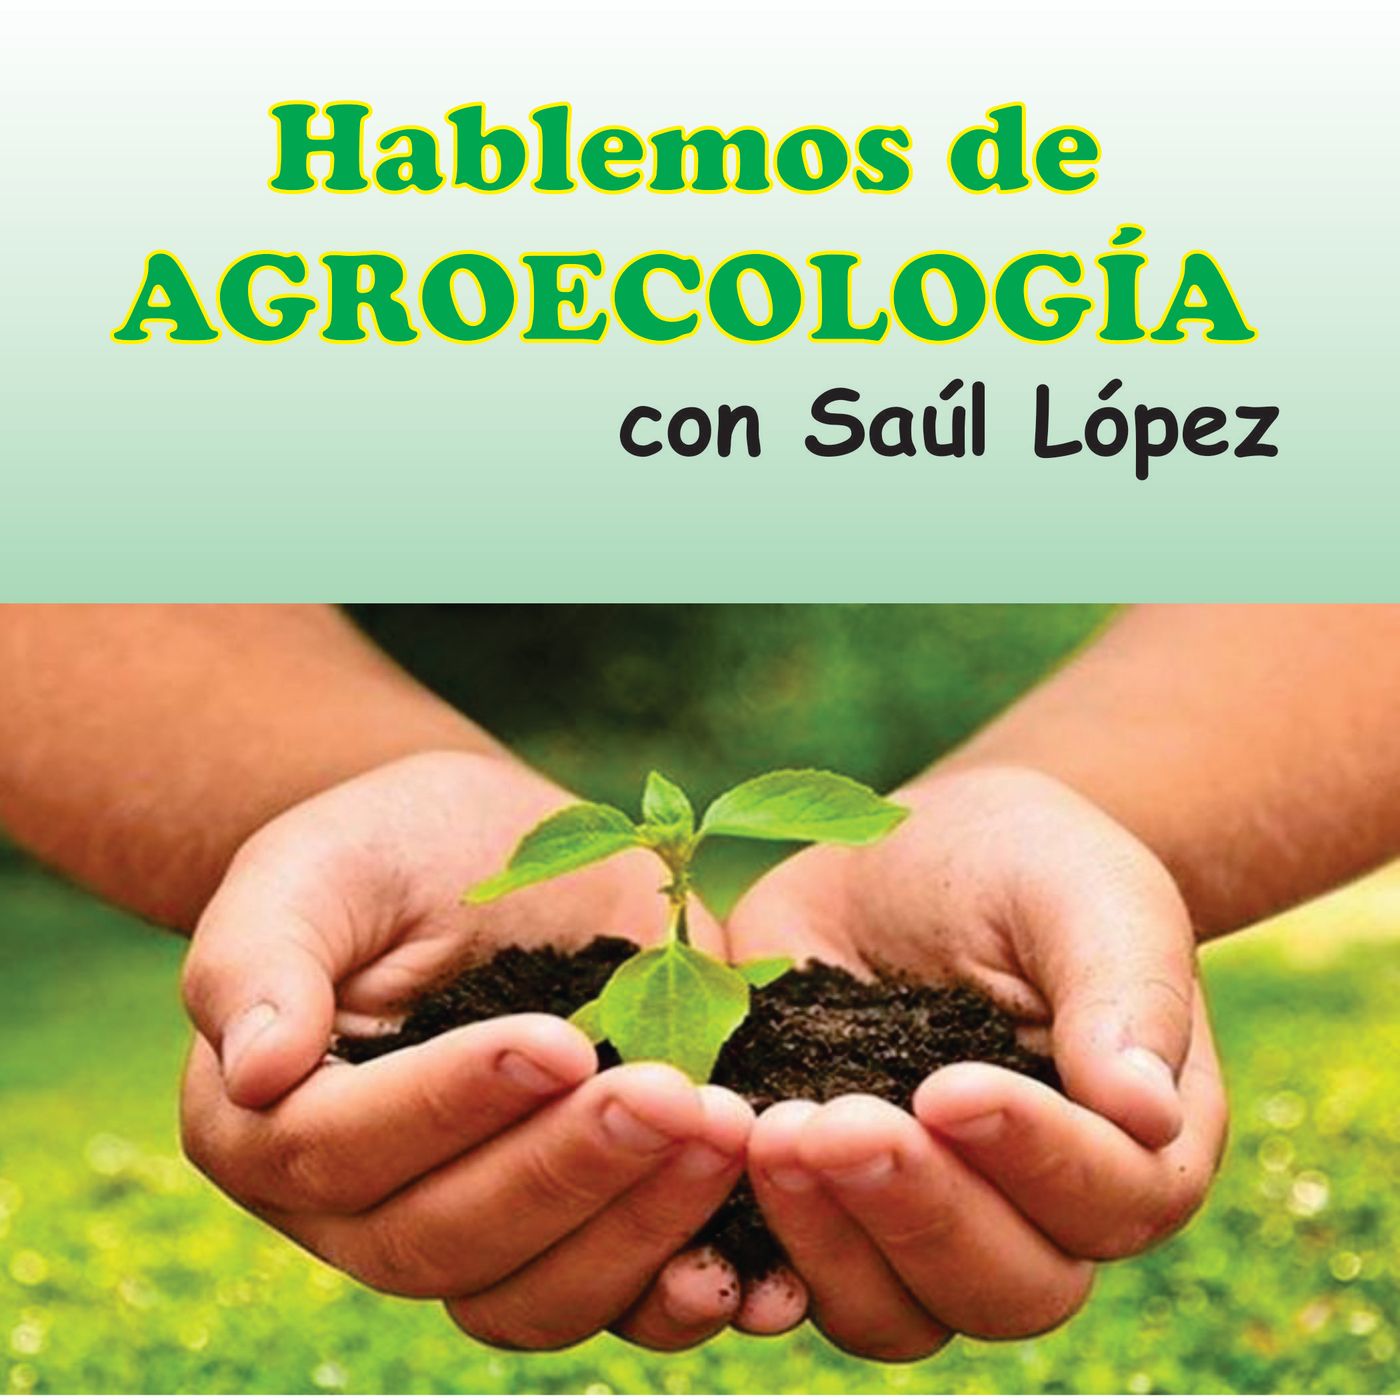 Temporada 2 Ep 2 Materia orgánica y bíota del suelo en el modelo agro ecológico